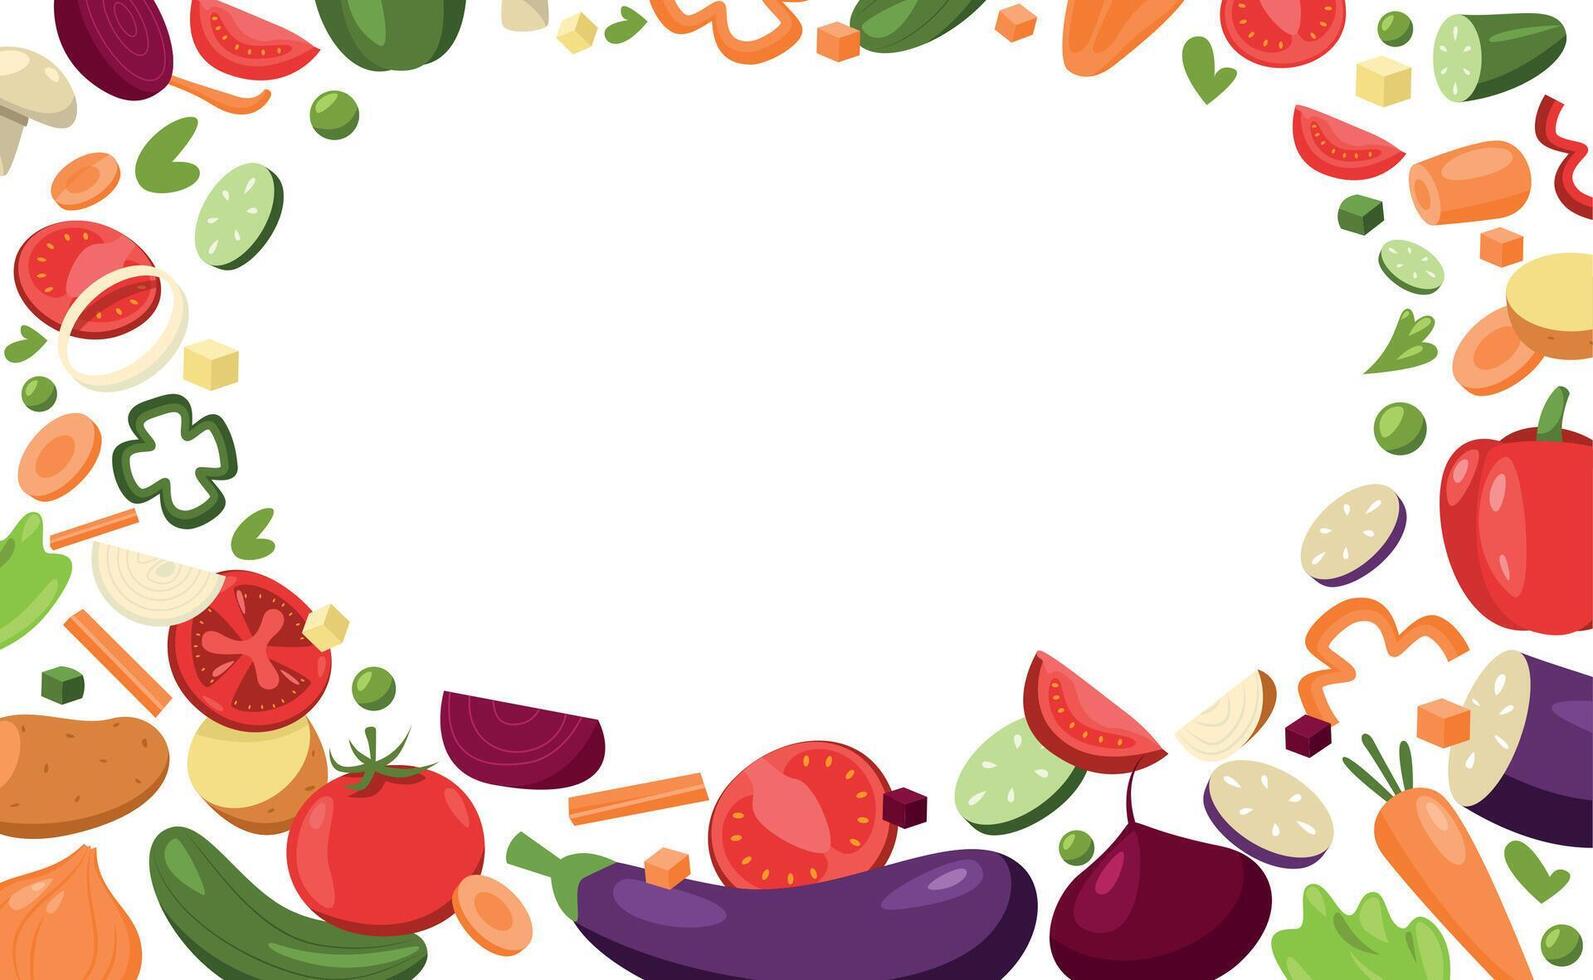 tranché des légumes encadrement. dessin animé haché Frais poivre oignon aubergine champignon concombre tomate, pièces de des légumes pour cuisson. vecteur en bonne santé nourriture Cadre bannière